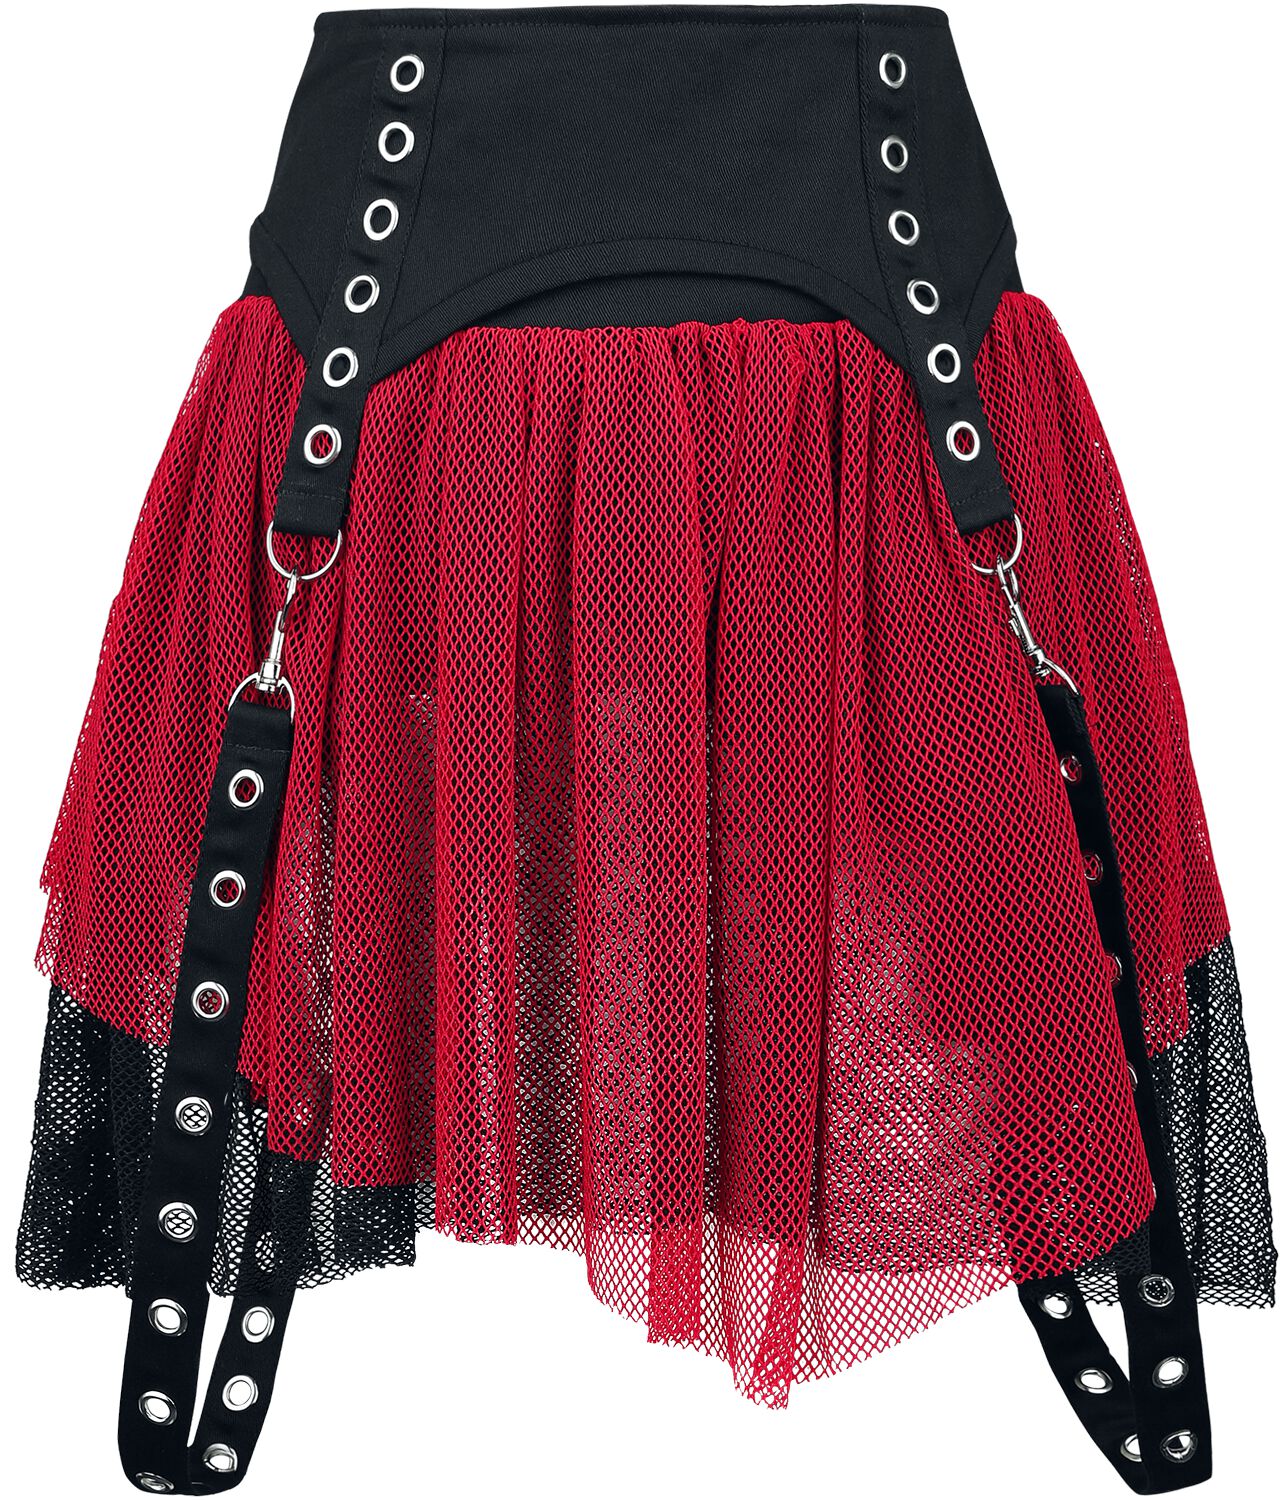 Poizen Industries Cybele Skirt Kurzer Rock schwarz rot in XS von Poizen Industries